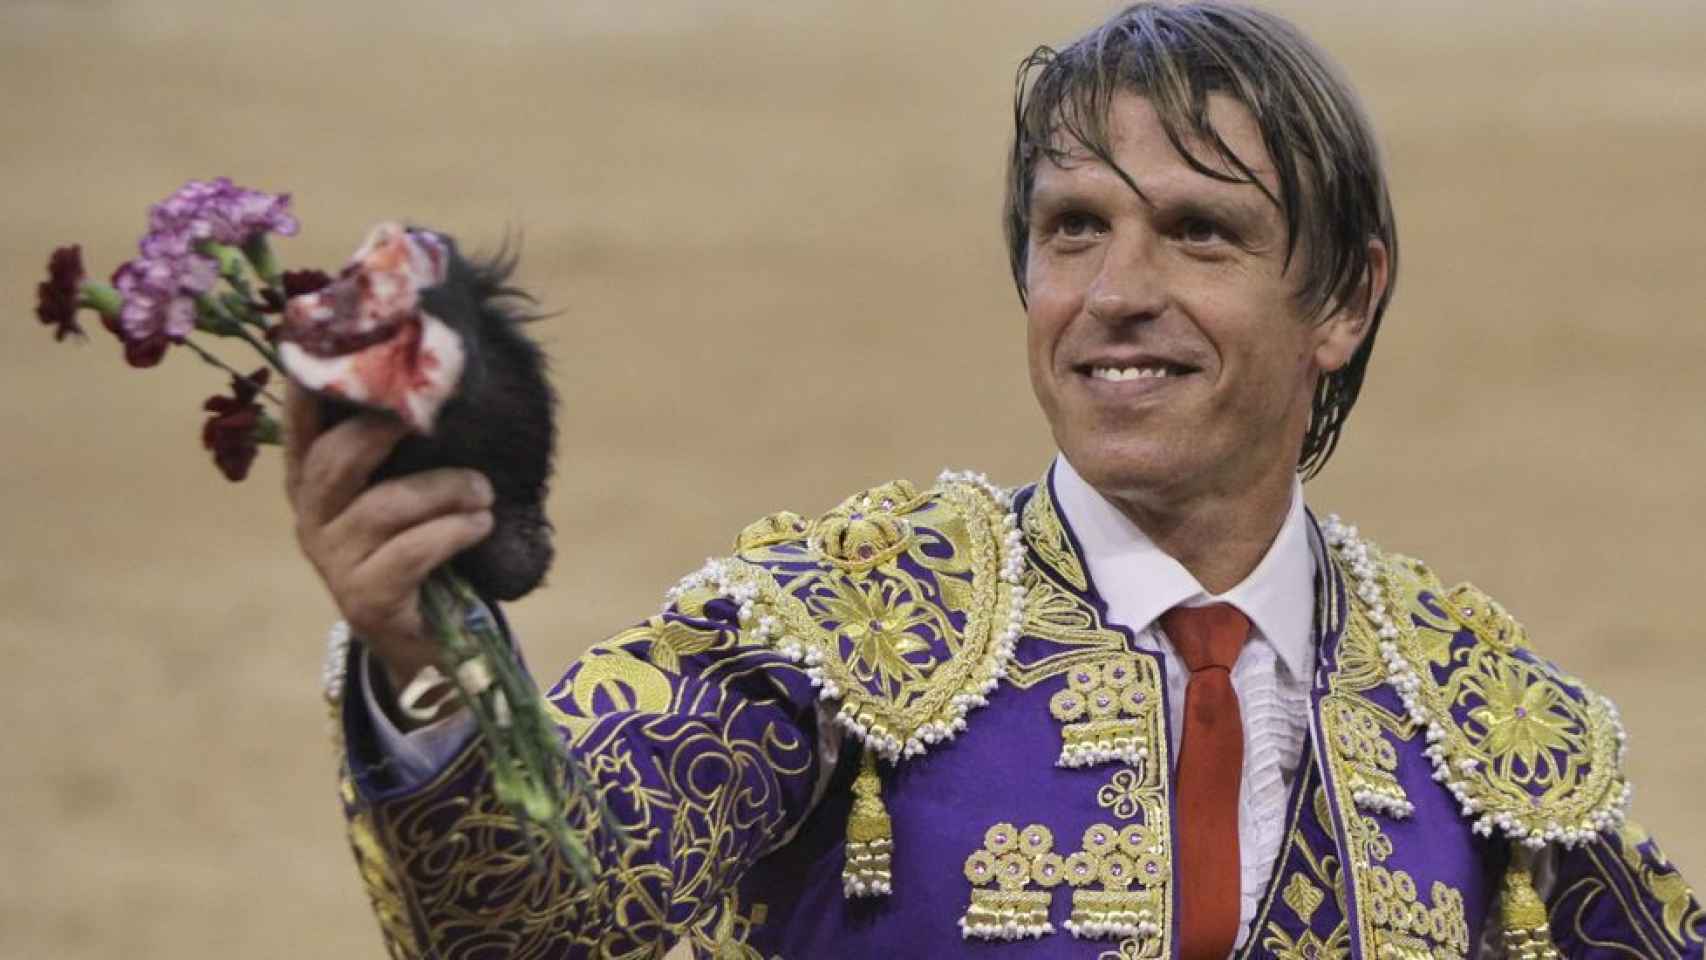 El torero ha huido de España para sobrellevar mejor la polémica desatada por esta decisión